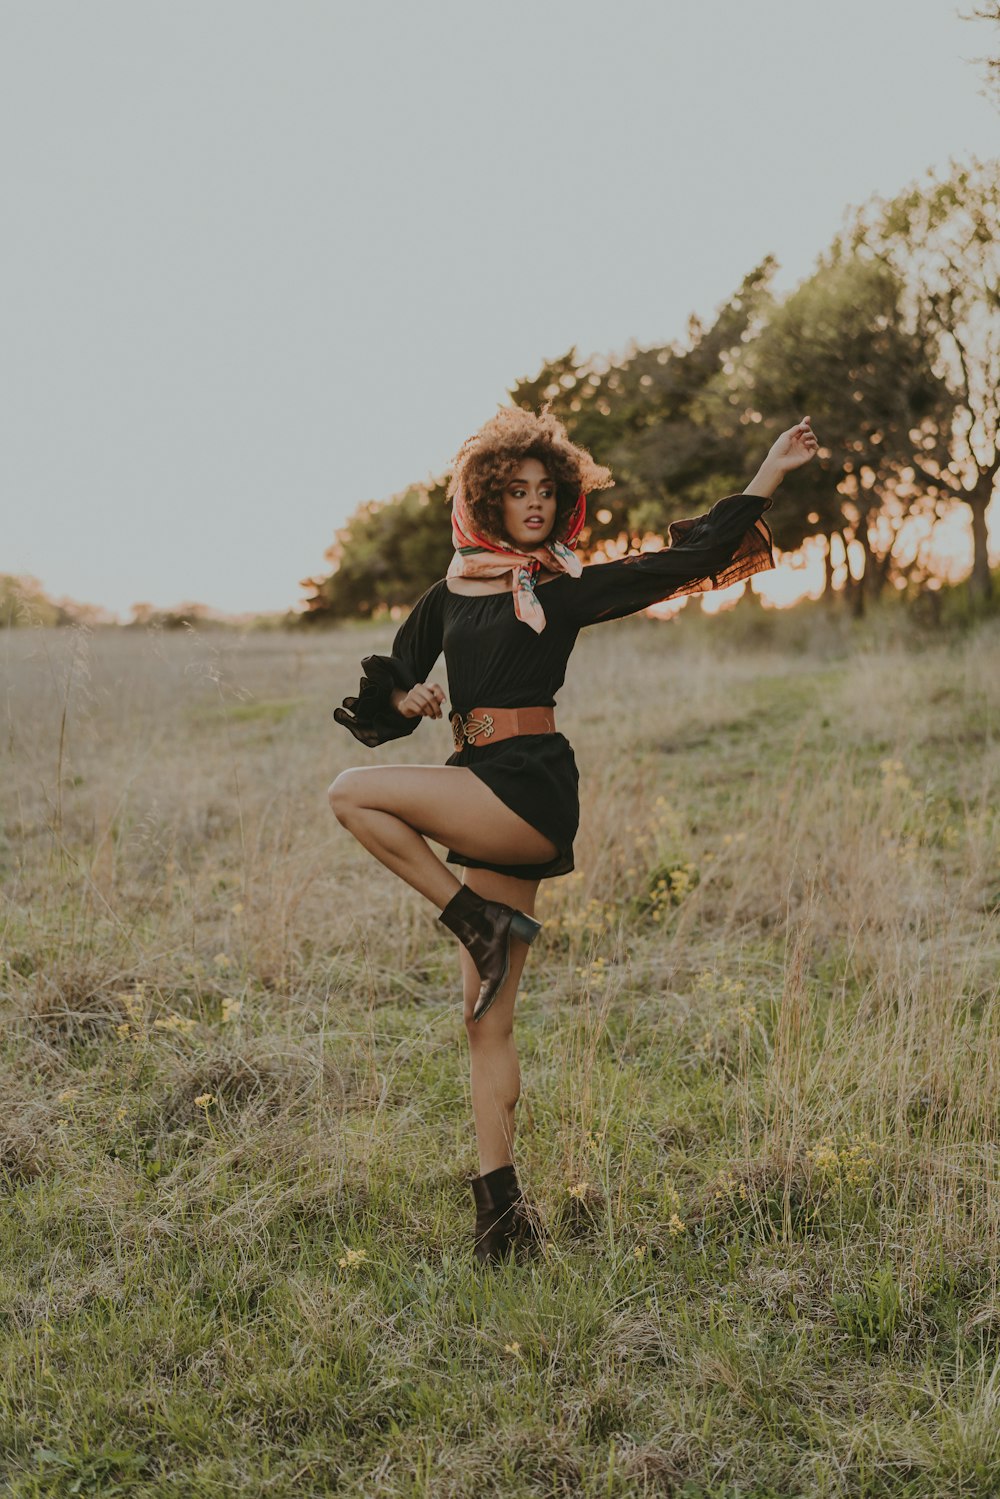 a woman in a black dress is dancing in a field